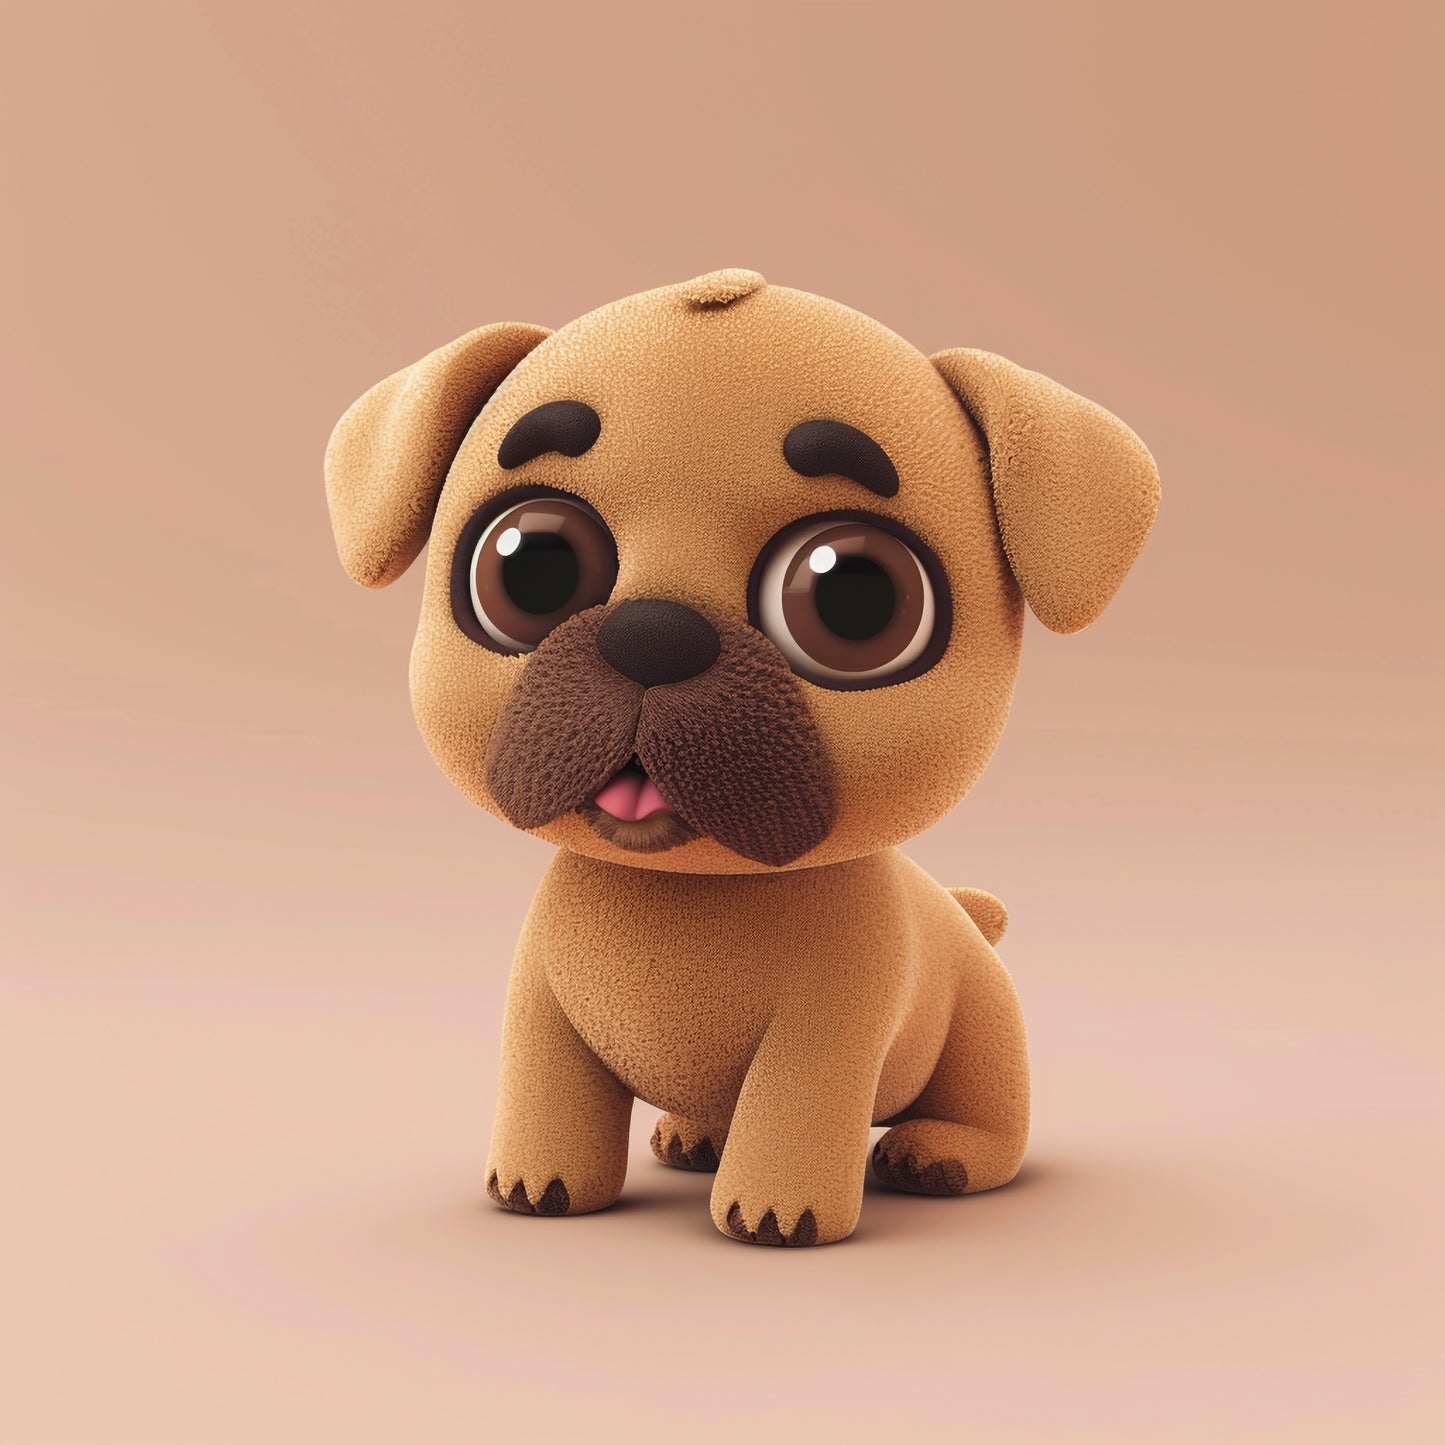 Adorable Bullmastiff Puppy with Cute Big Eyes